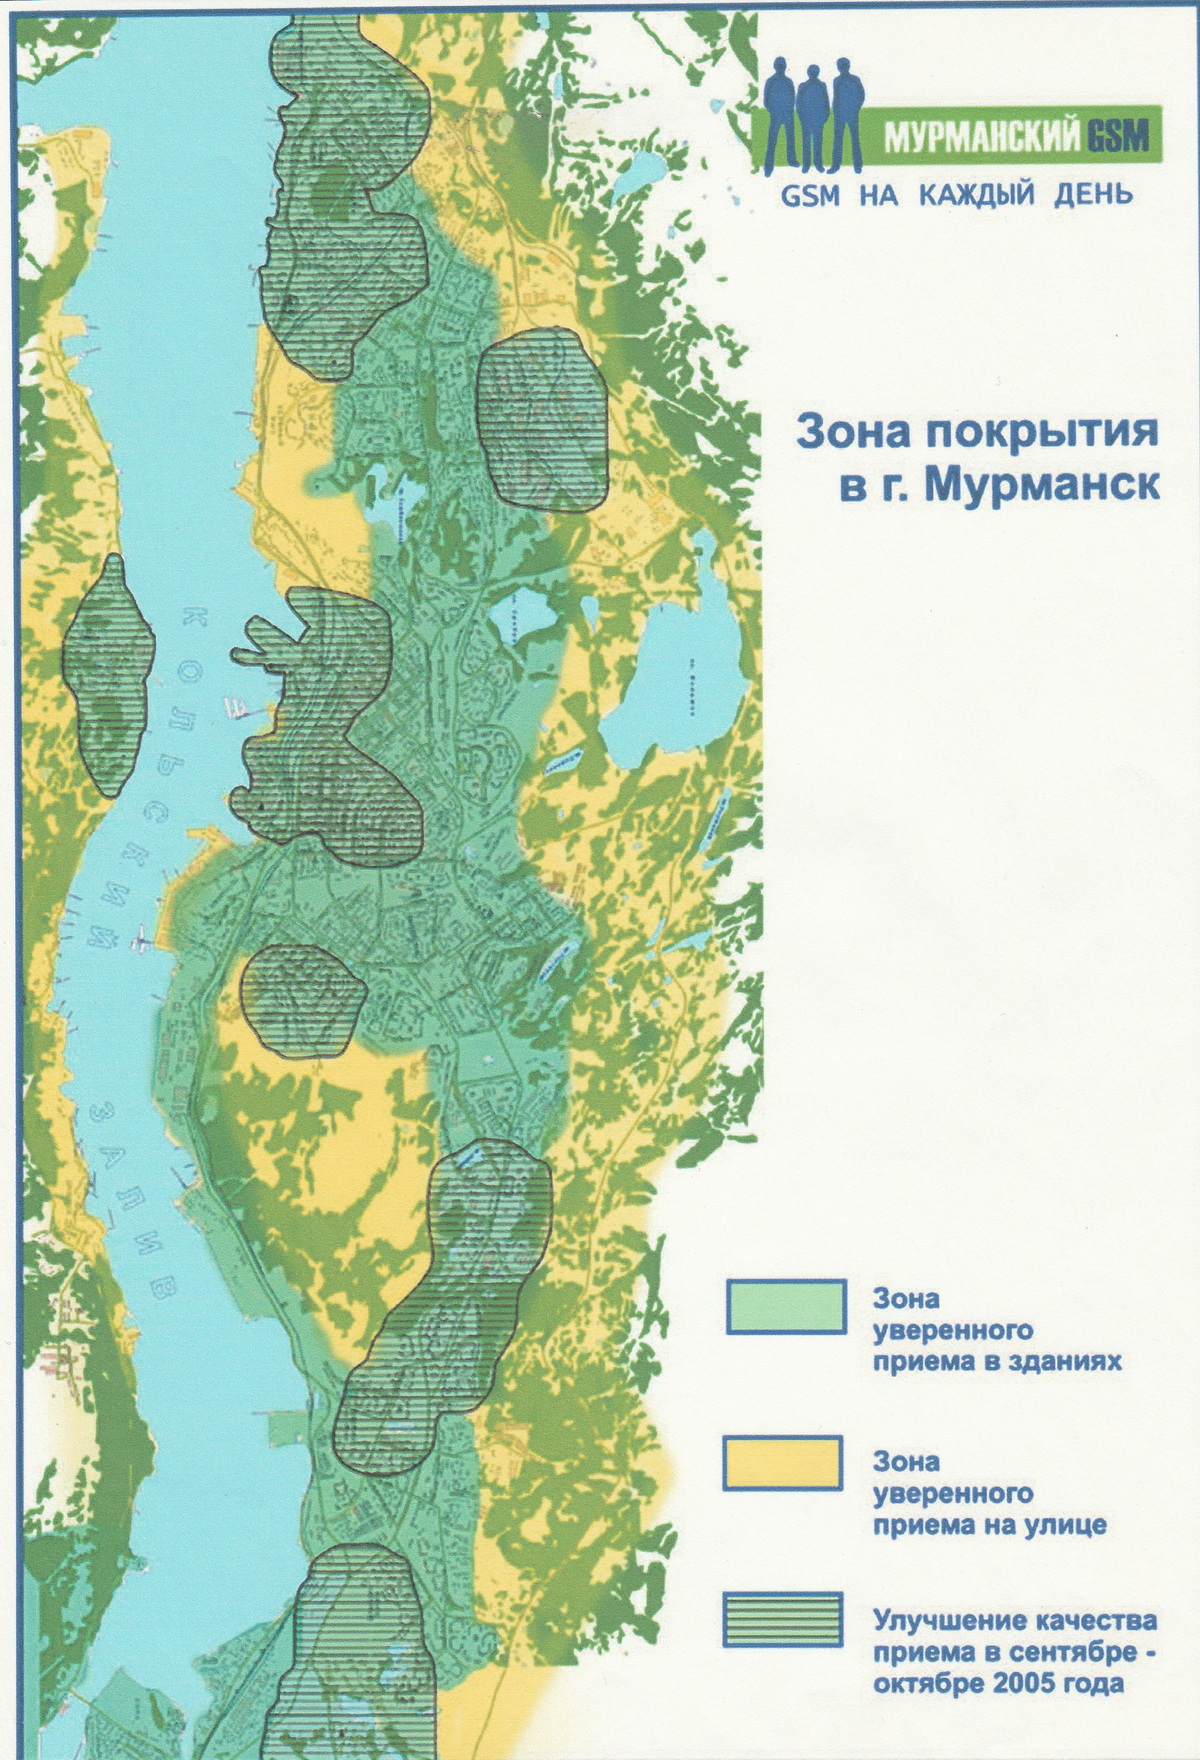 27 лет на рынке Мурманской области (от ММС GSM до T2-Мобайл) 2